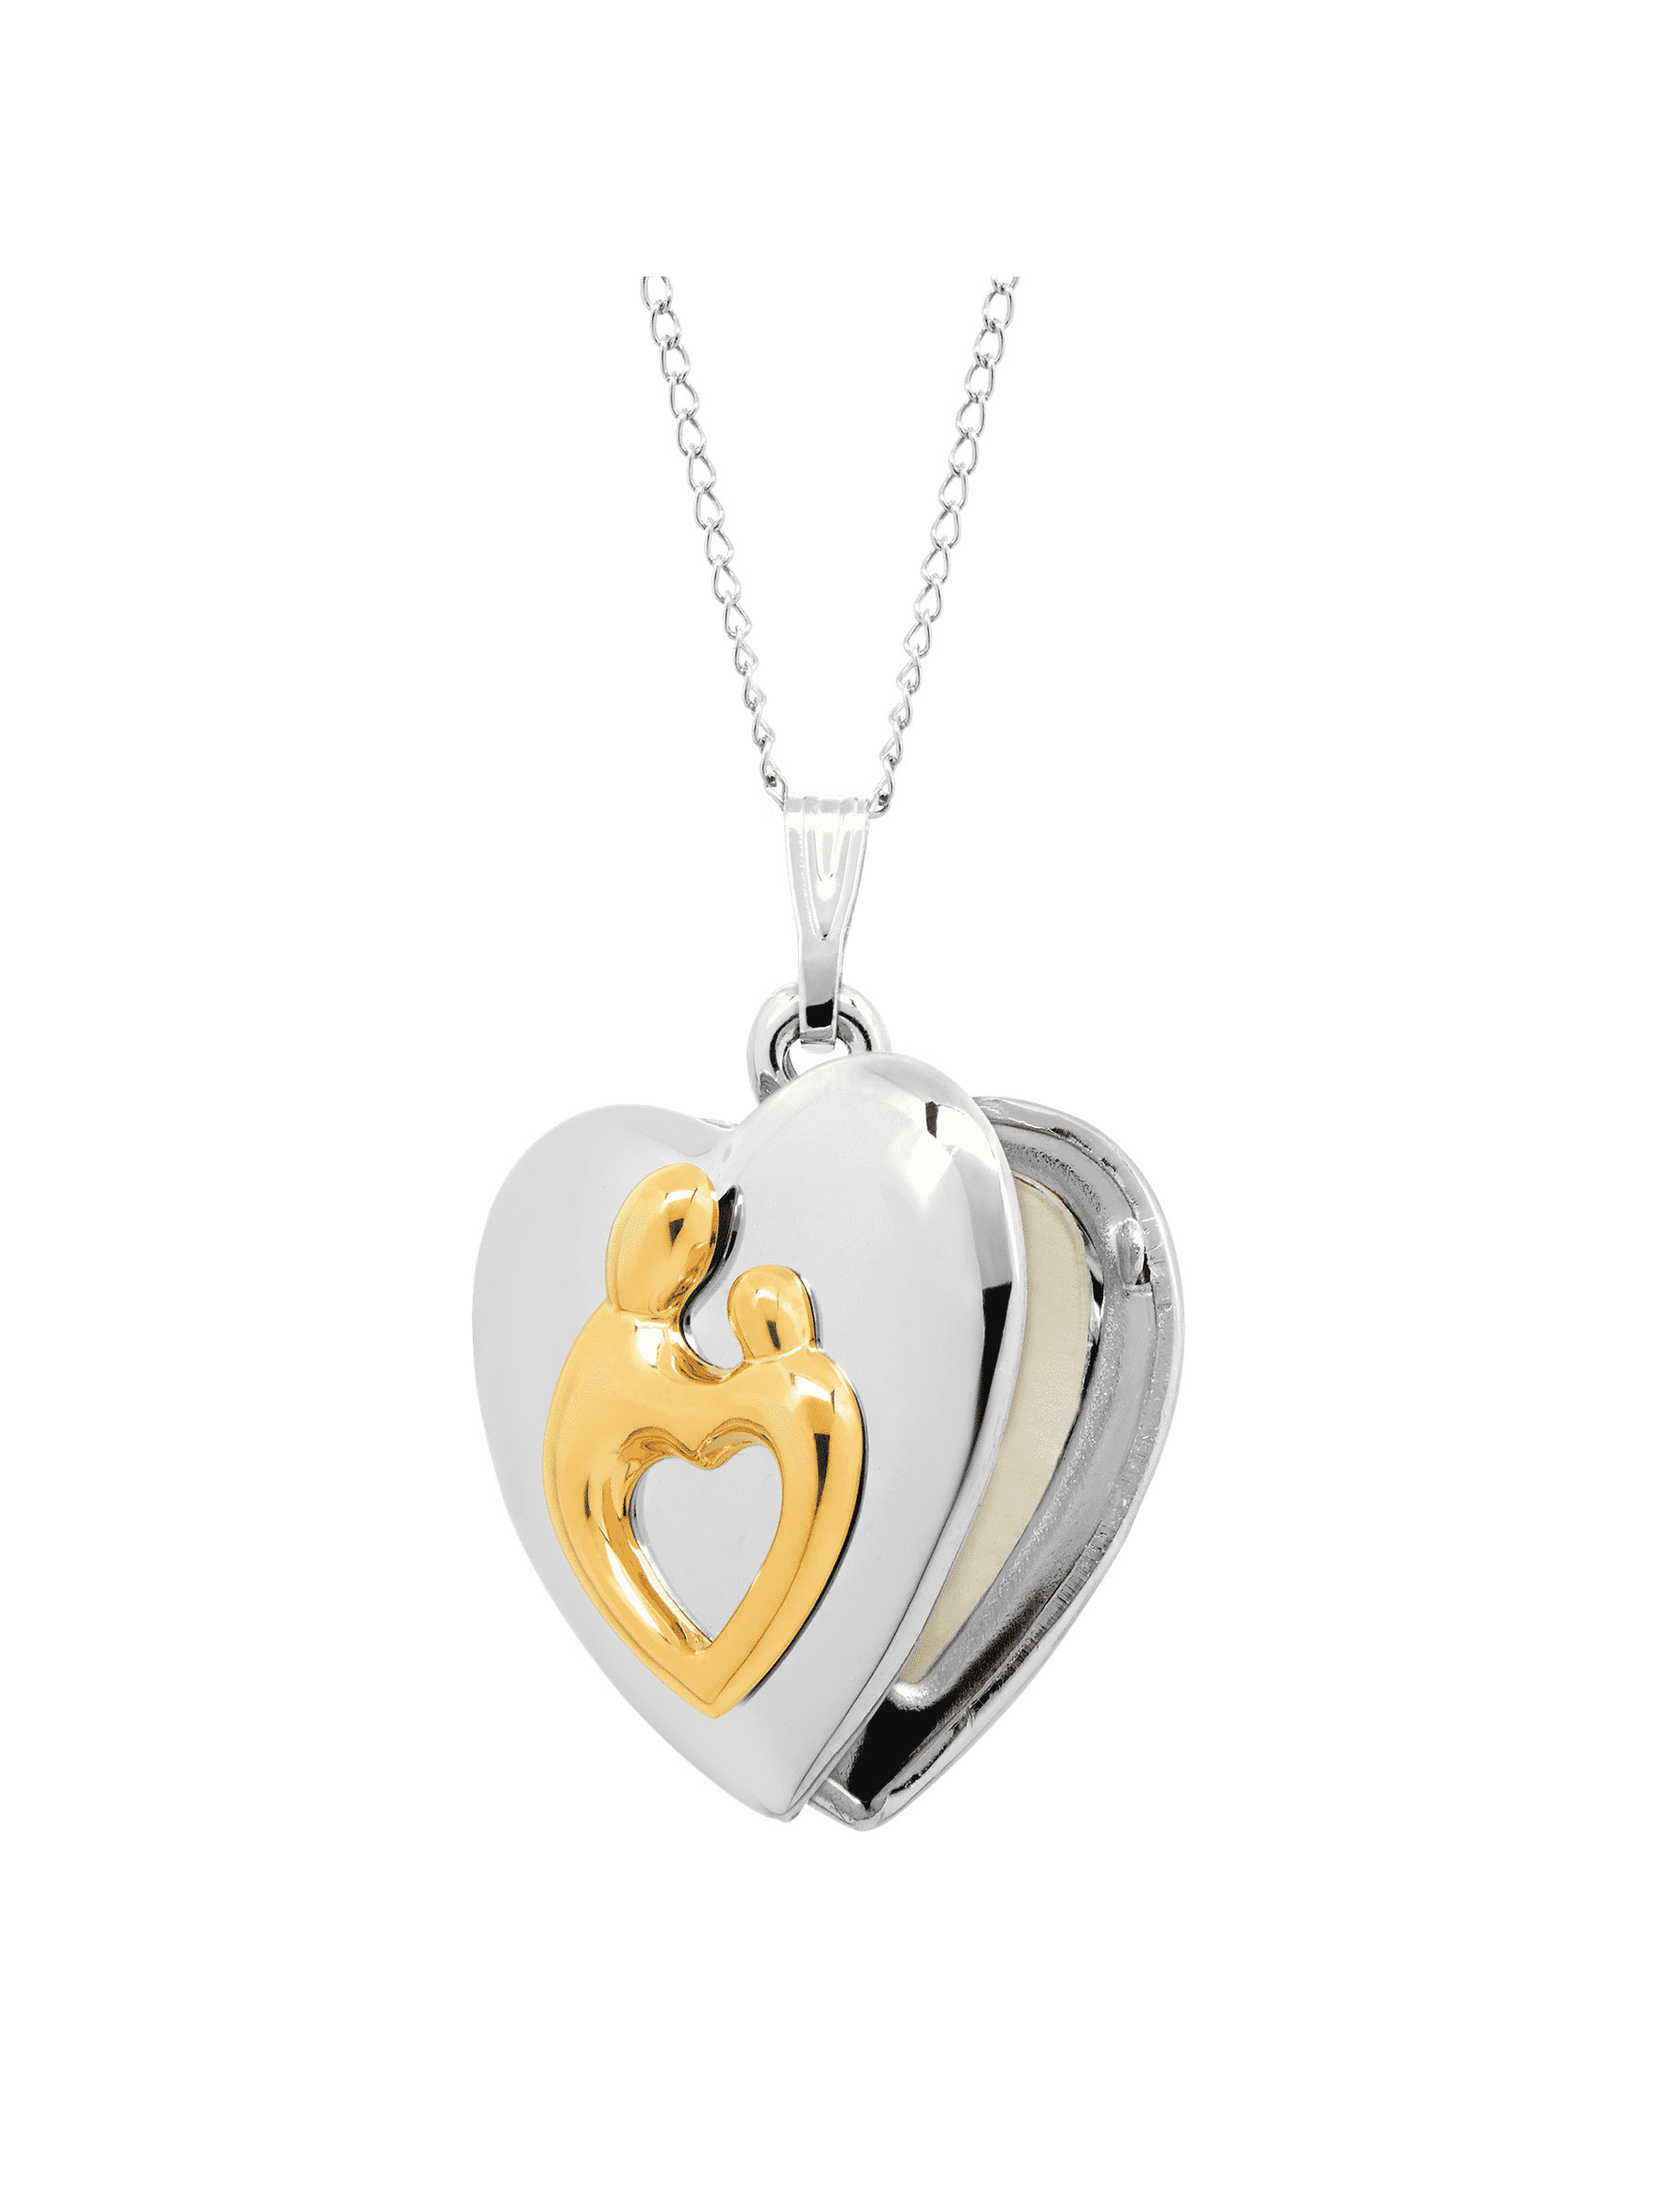 Child 14K Gold Filled Heart Locket Necklace